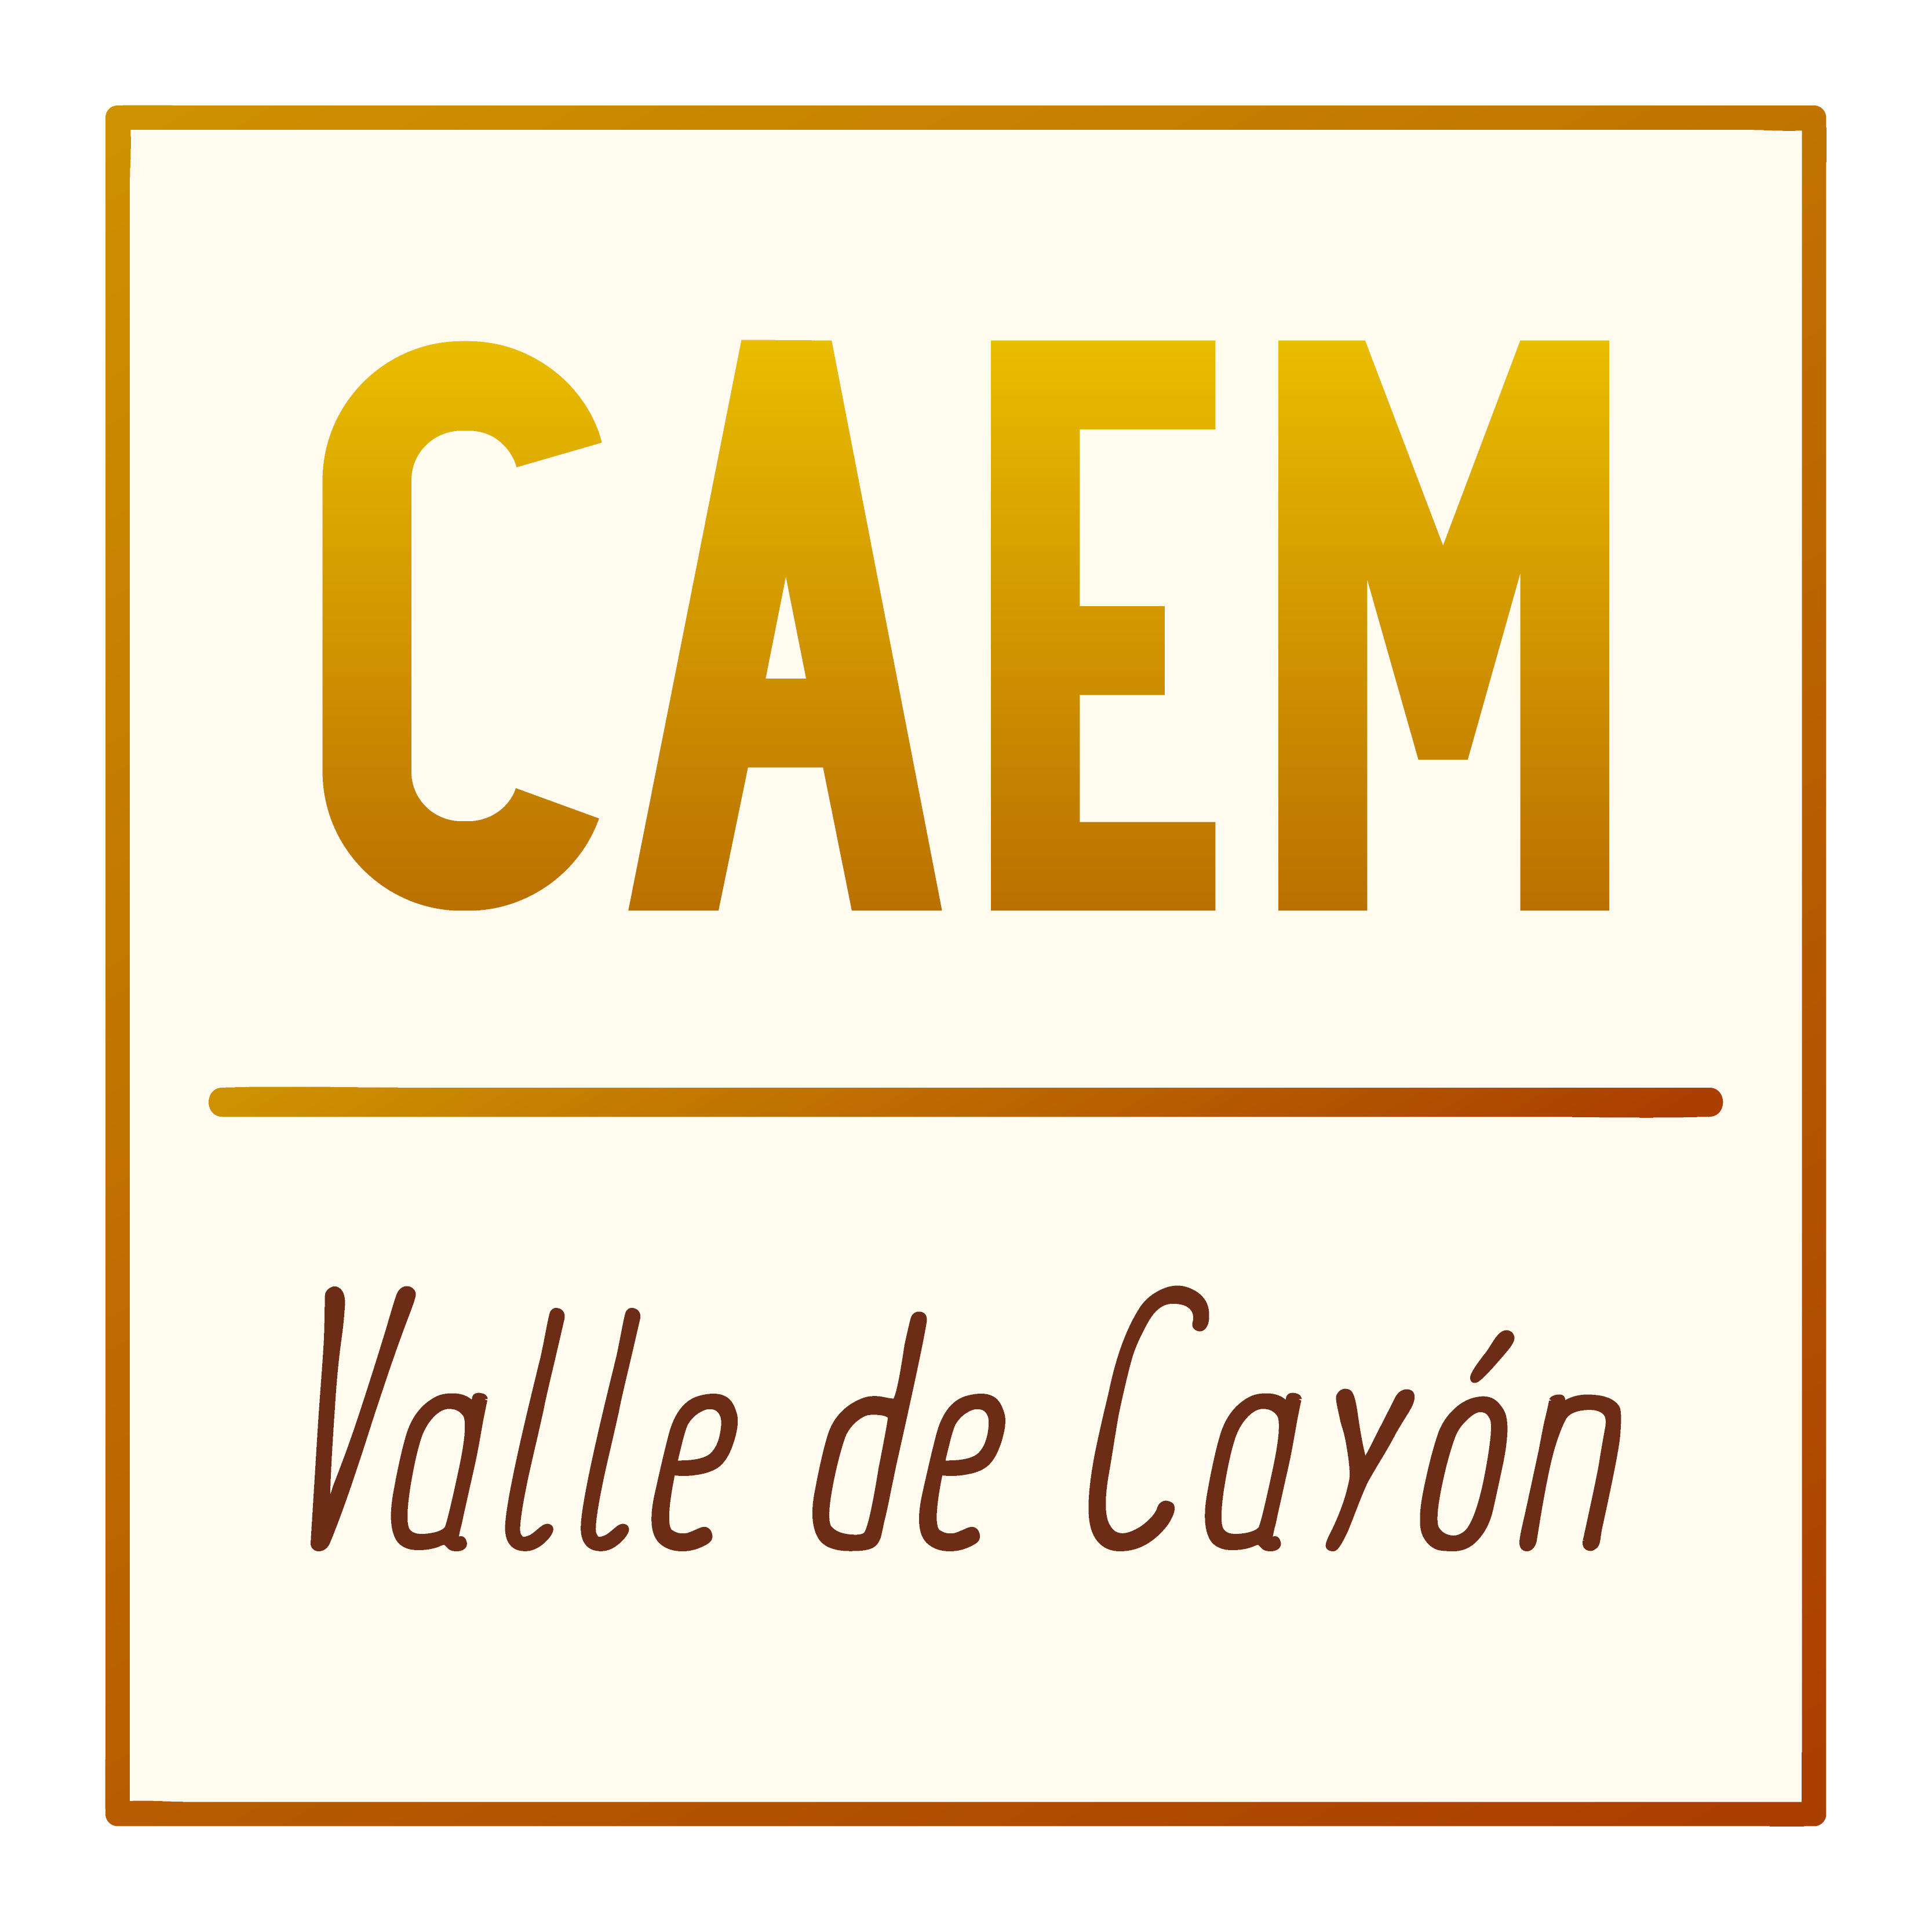 C.A.E.M. ”Valle de Cayón”